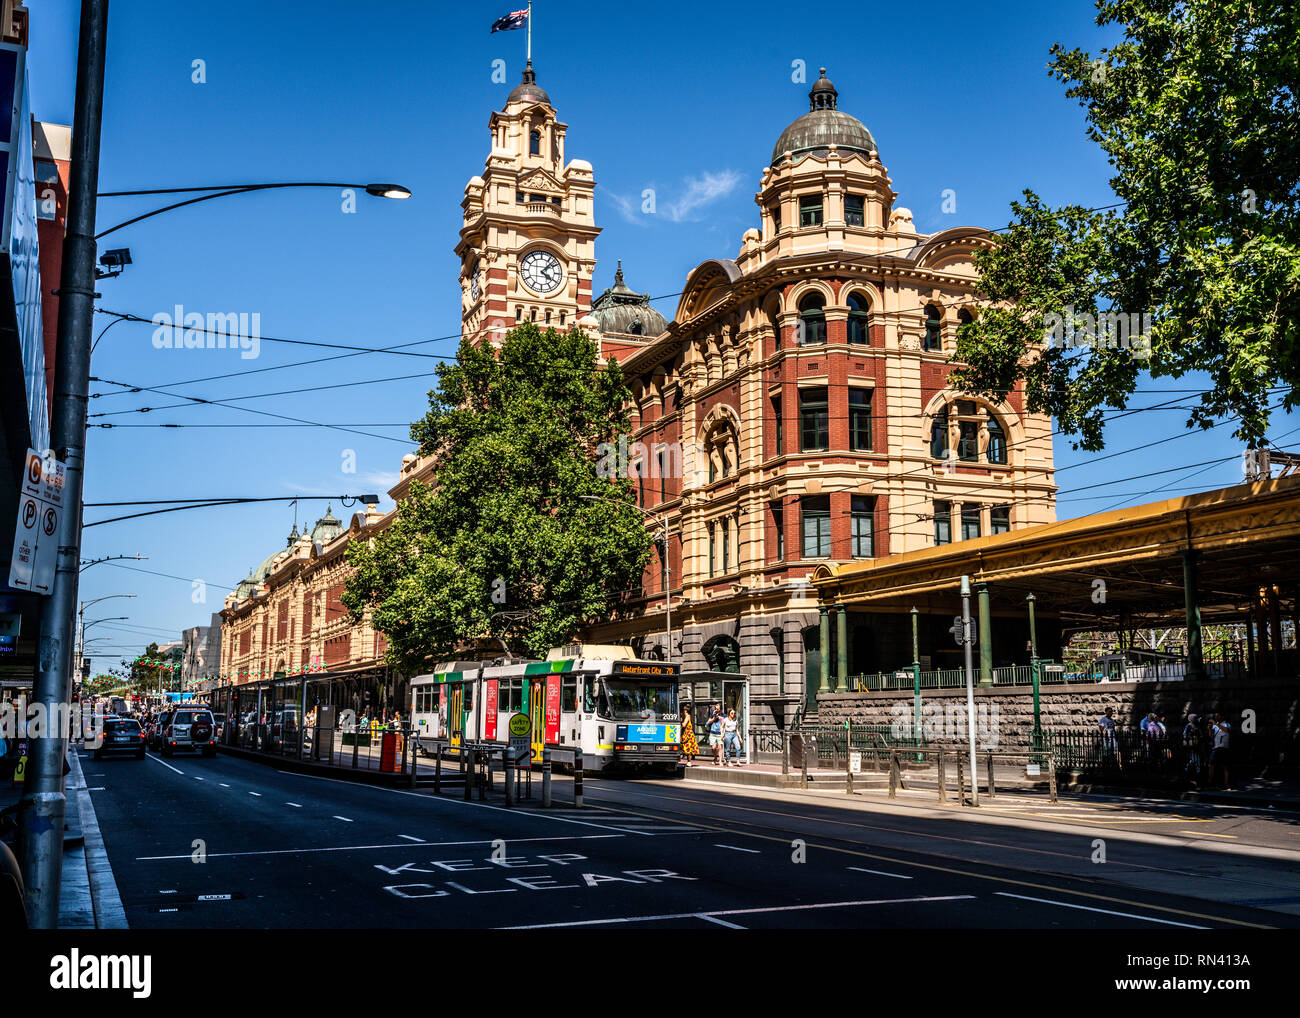 El 2 de enero de 2019, Melbourne, Australia : vista panorámica del edificio de la estación de tren de Flinders Street y la torre del reloj desde el oeste y Flinders Street View Foto de stock